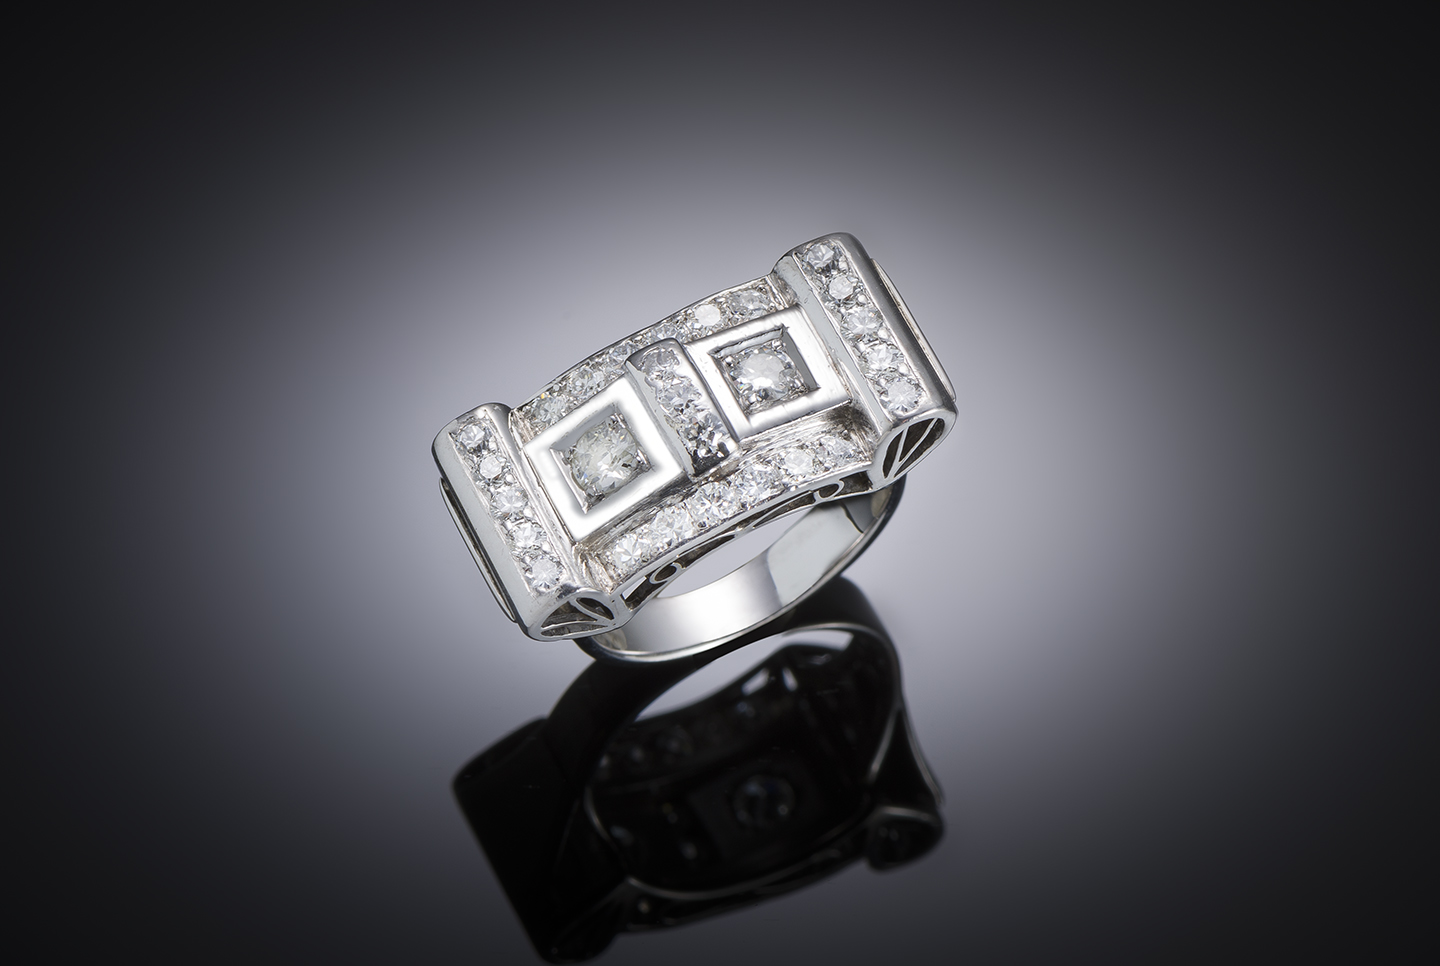 Bague moderniste vers 1935 diamants (1,70 carat) – Tête de bague : 2,4 cm x 1,3 cm-1